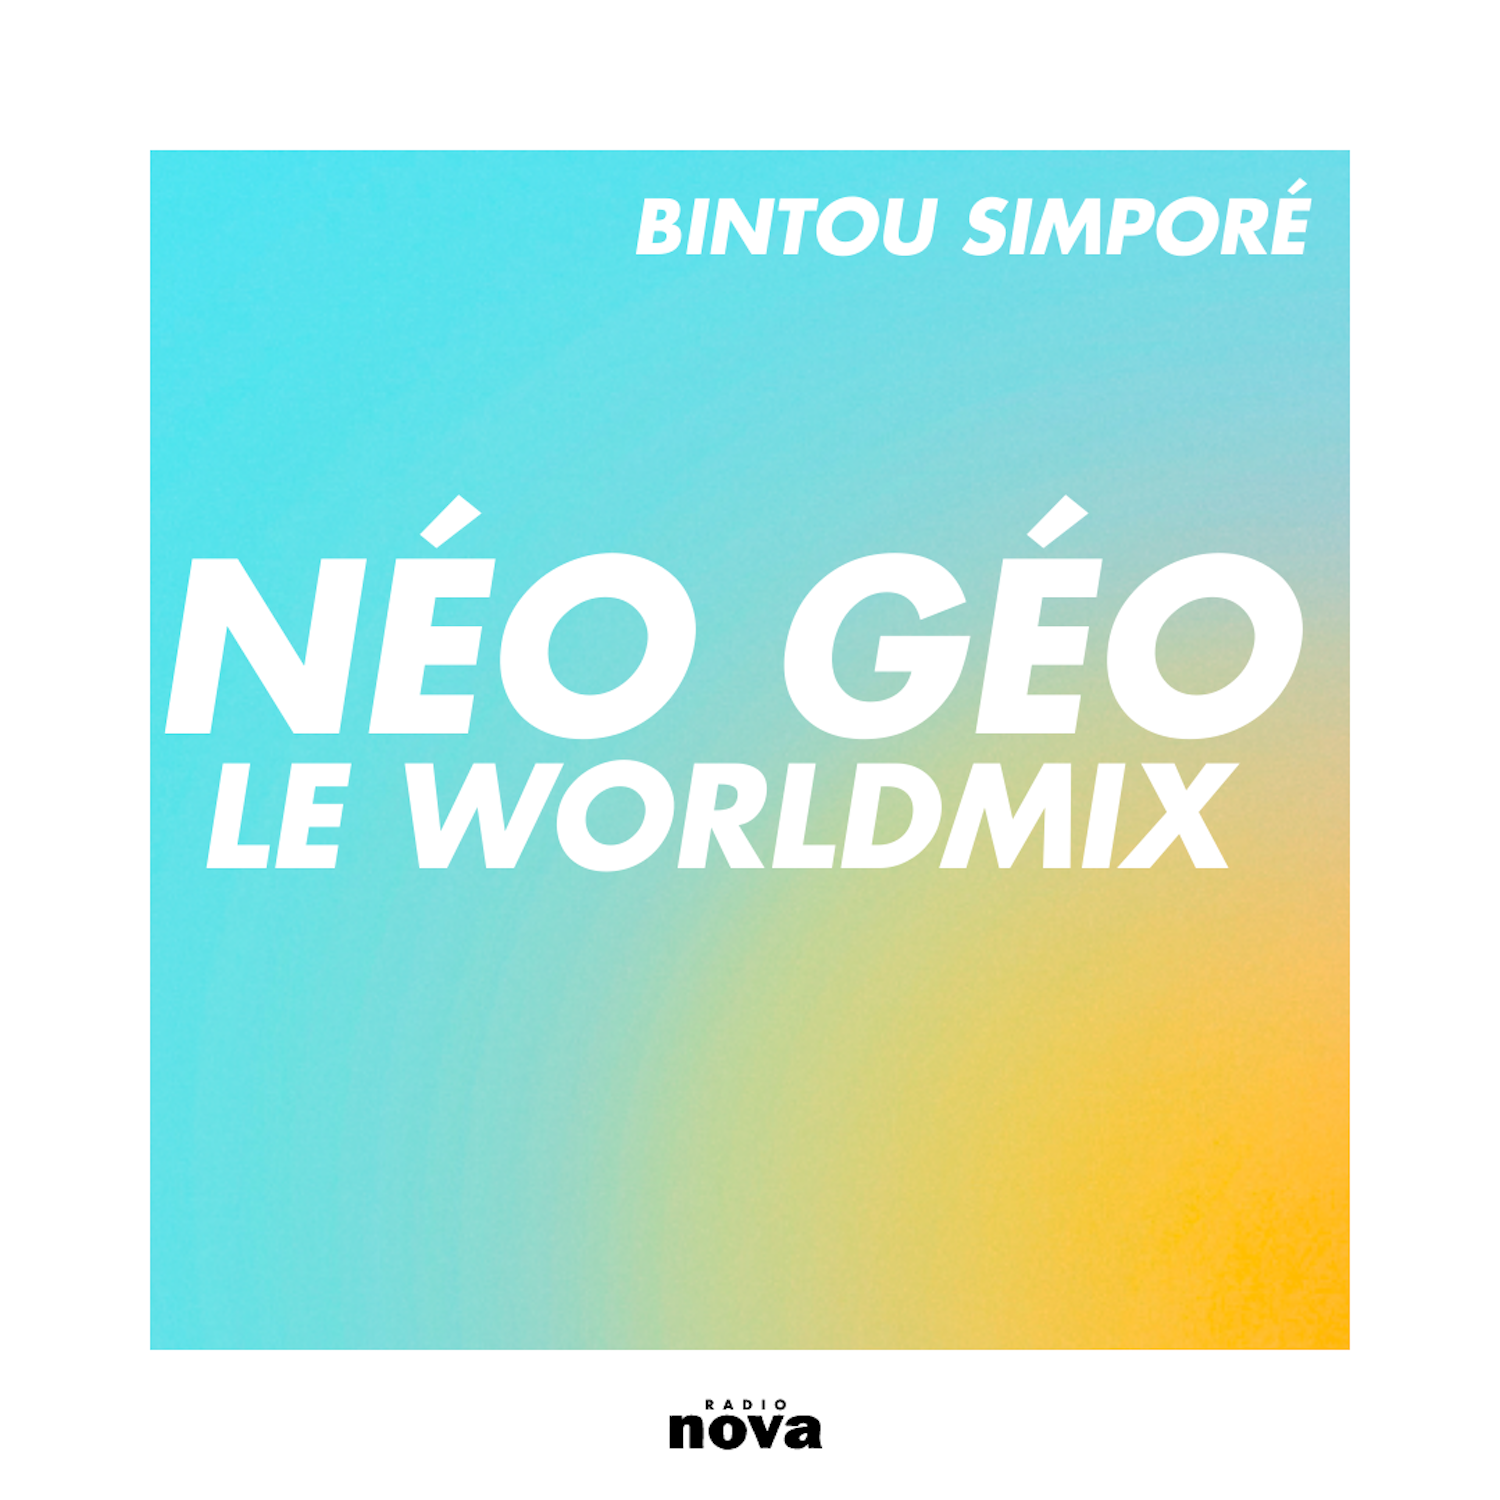 Néo Géo Nova : le Worldmix